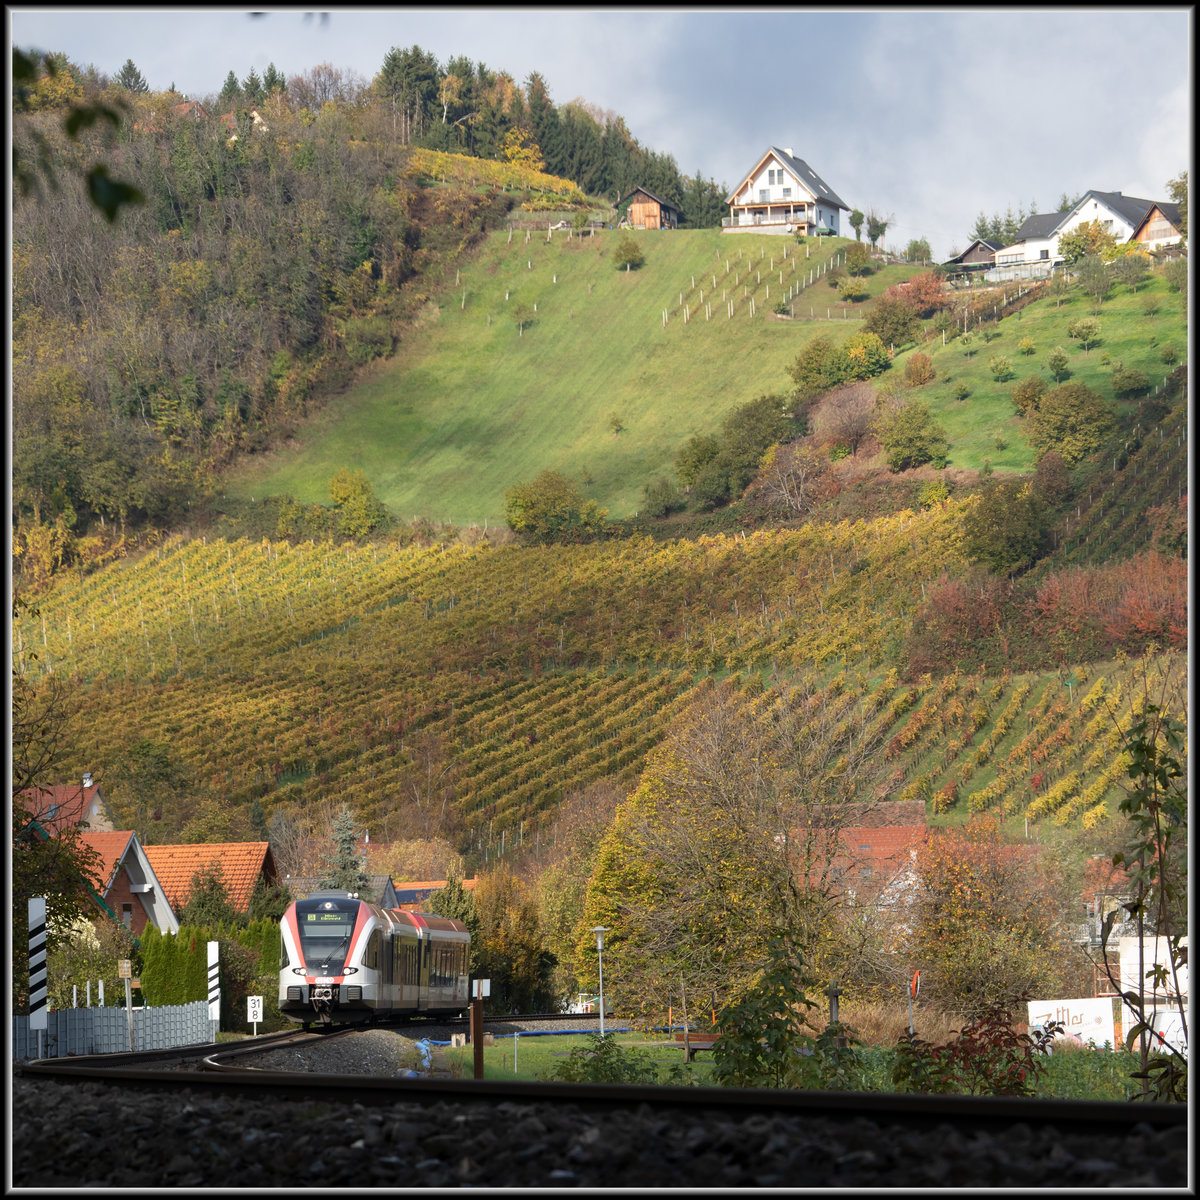 Herbstliches Weinlaub verzaubert die Landschaft um die Burg Deutschlandsberg in ein Wunderland. 
Ein Panorama davon hab ich zwar gemacht , ist halt leider kein Zug drauf .... 
7.11.2019